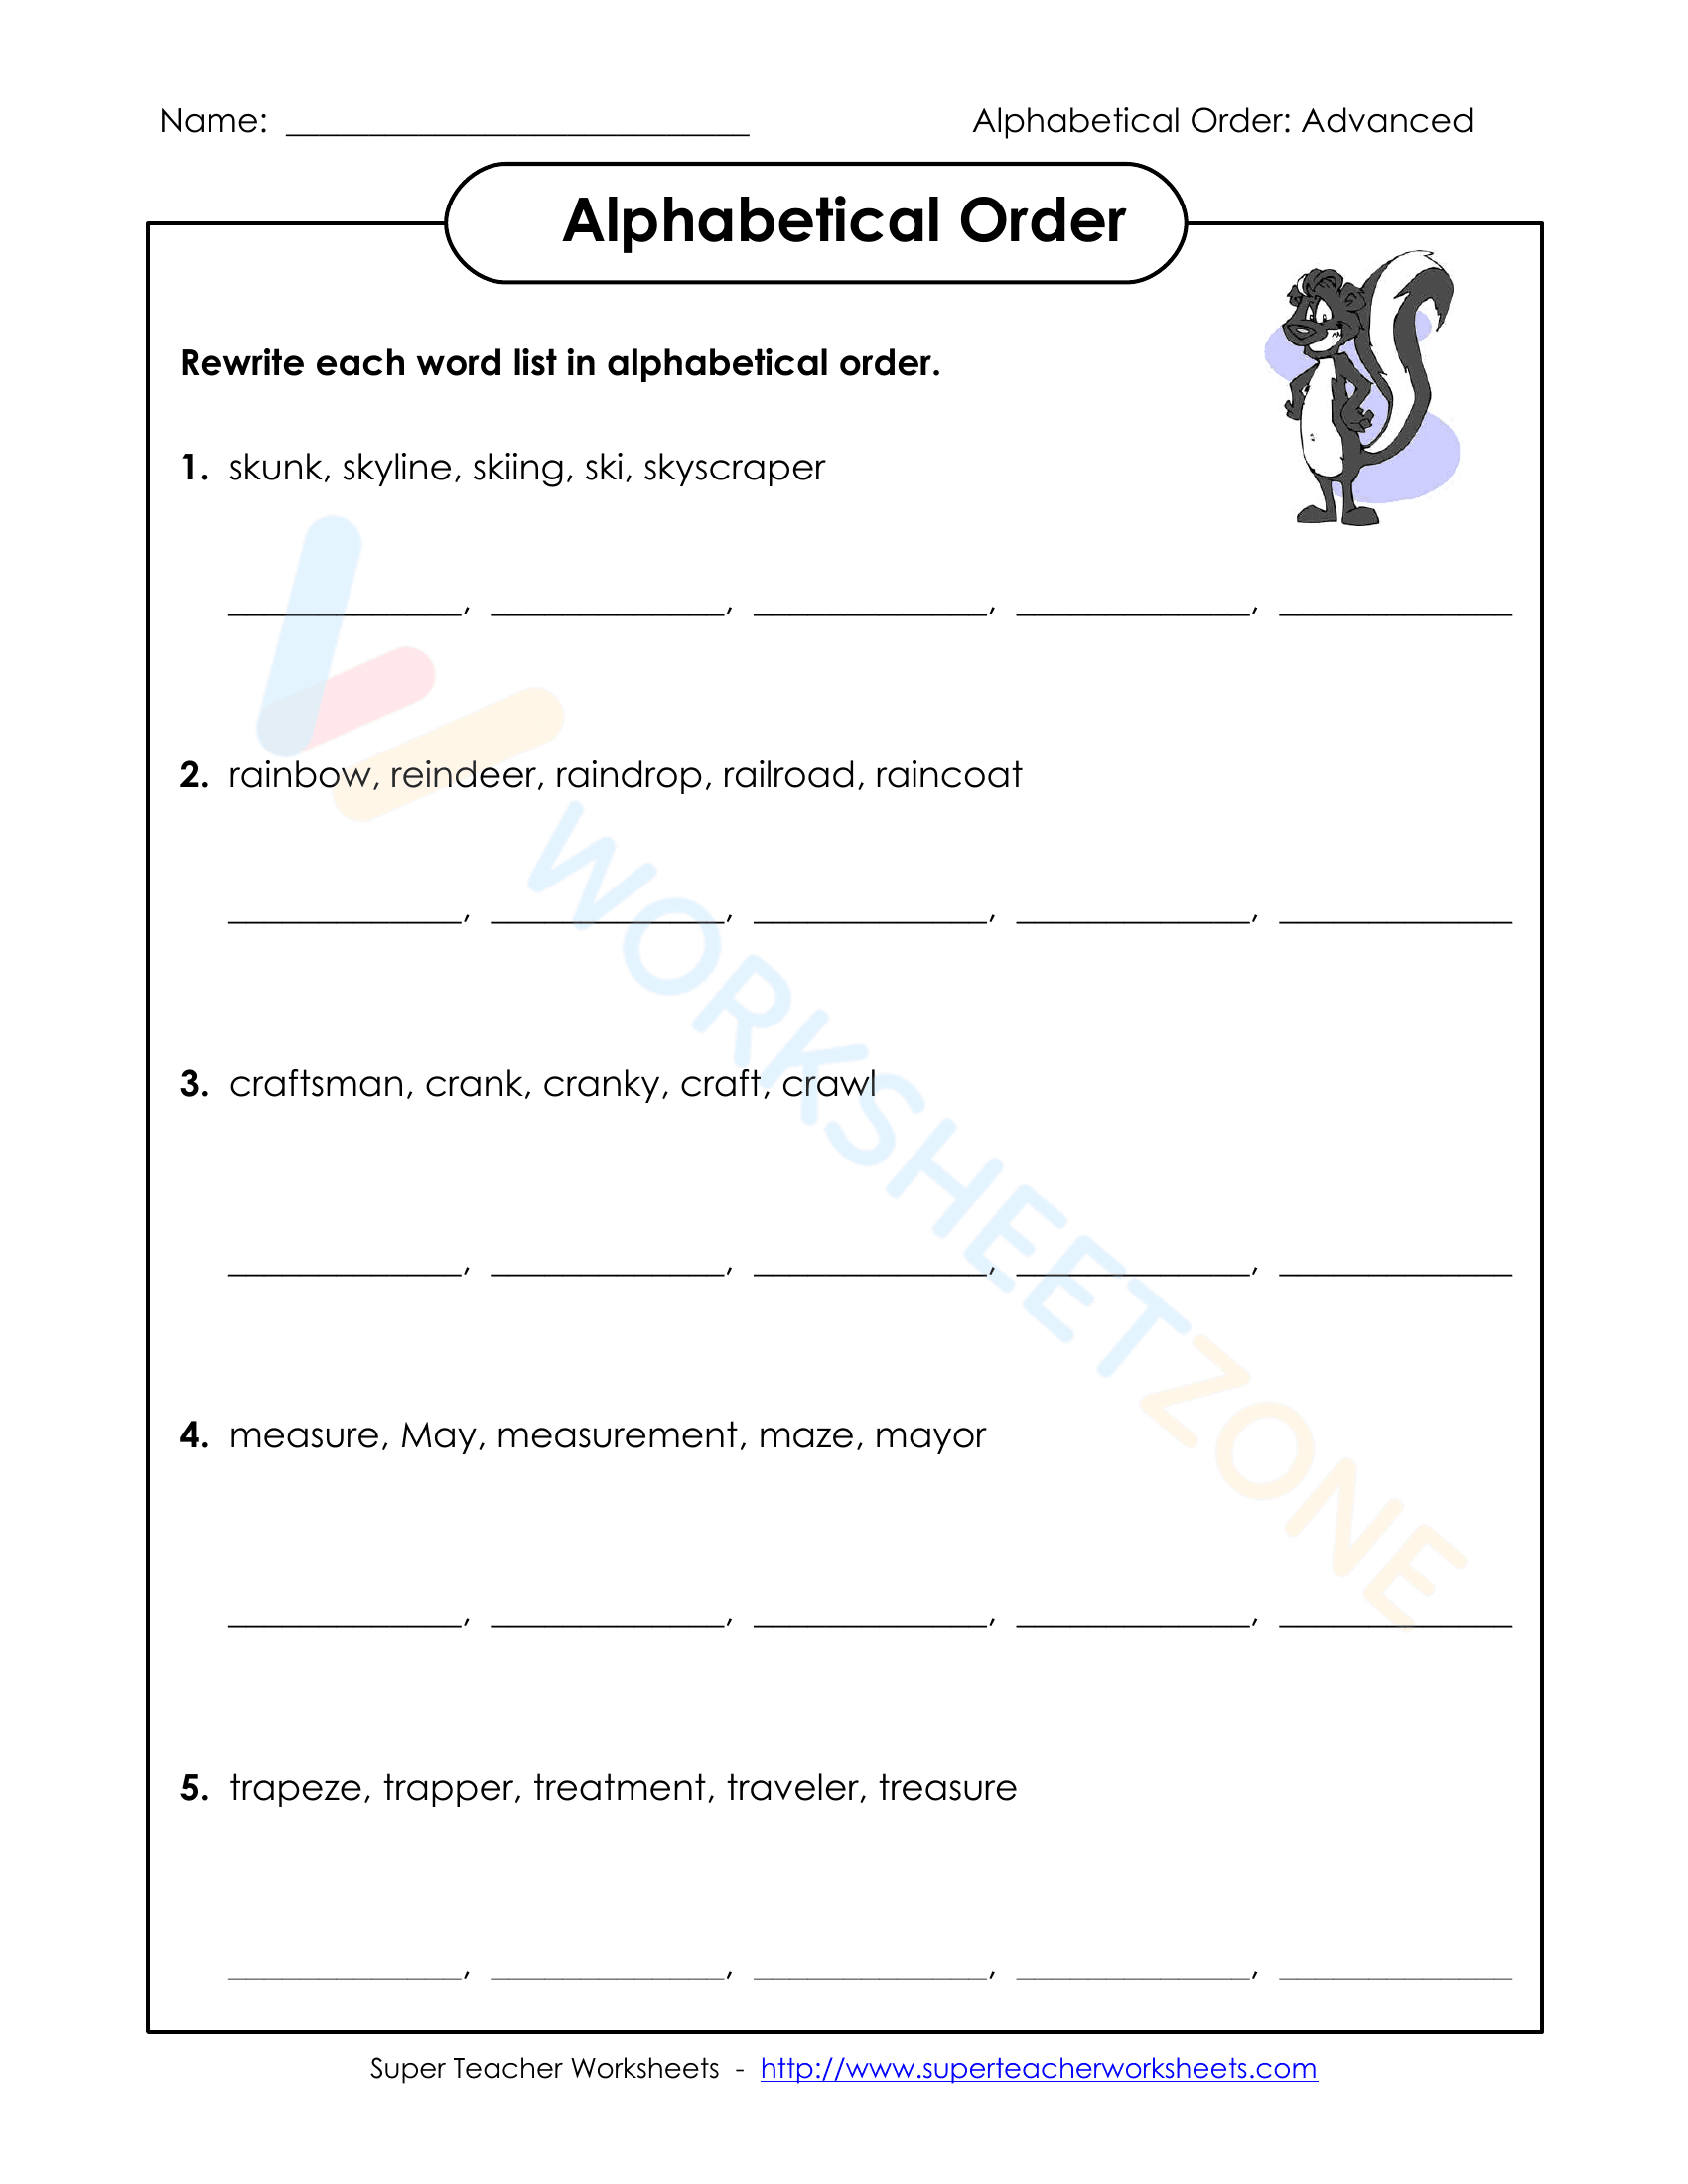 alphabetical order worksheets 1